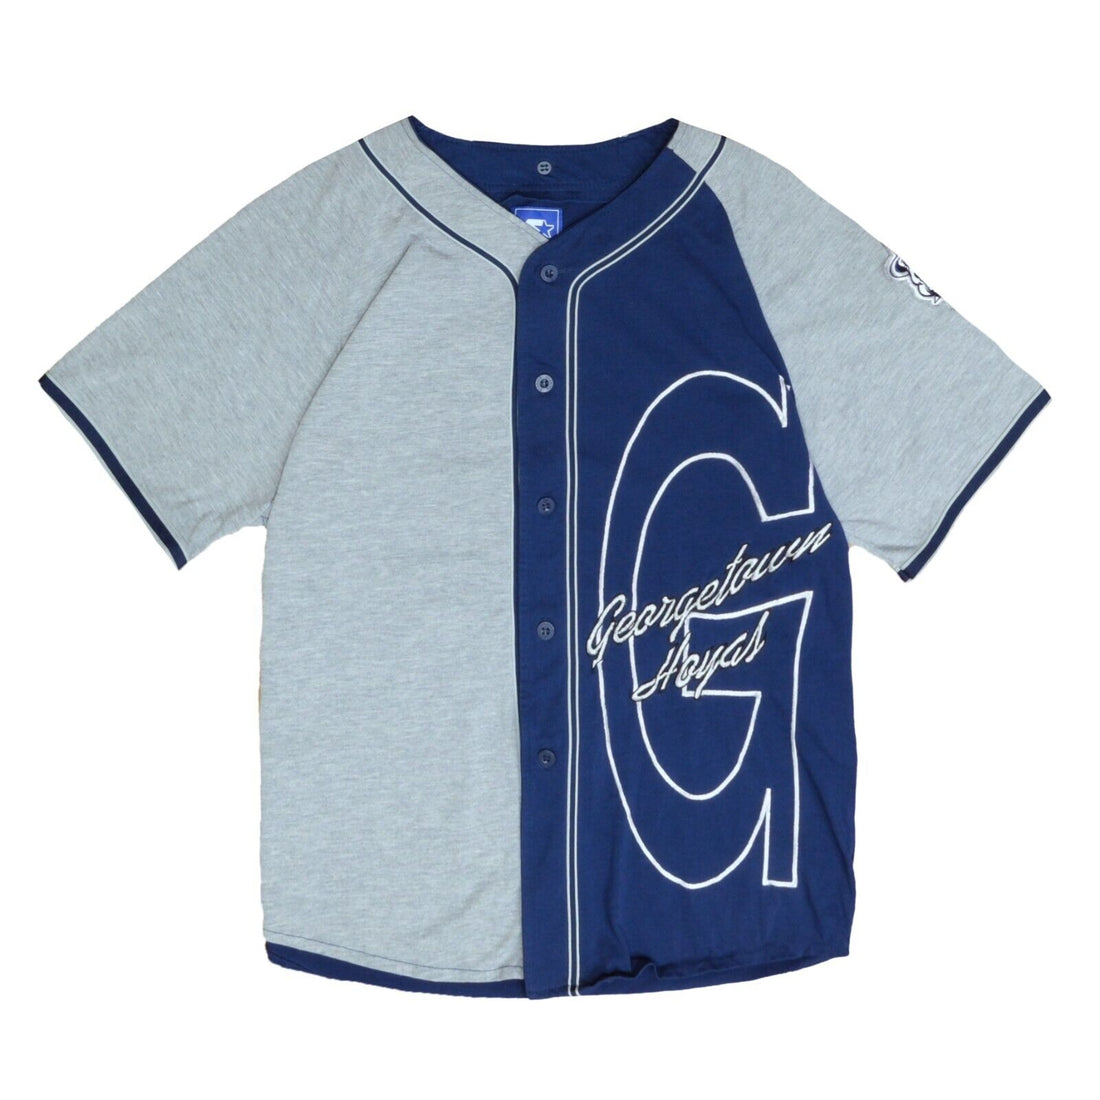 Vintage Georgetown Hoyas Starter Baseball Jersey Size Medium 90s